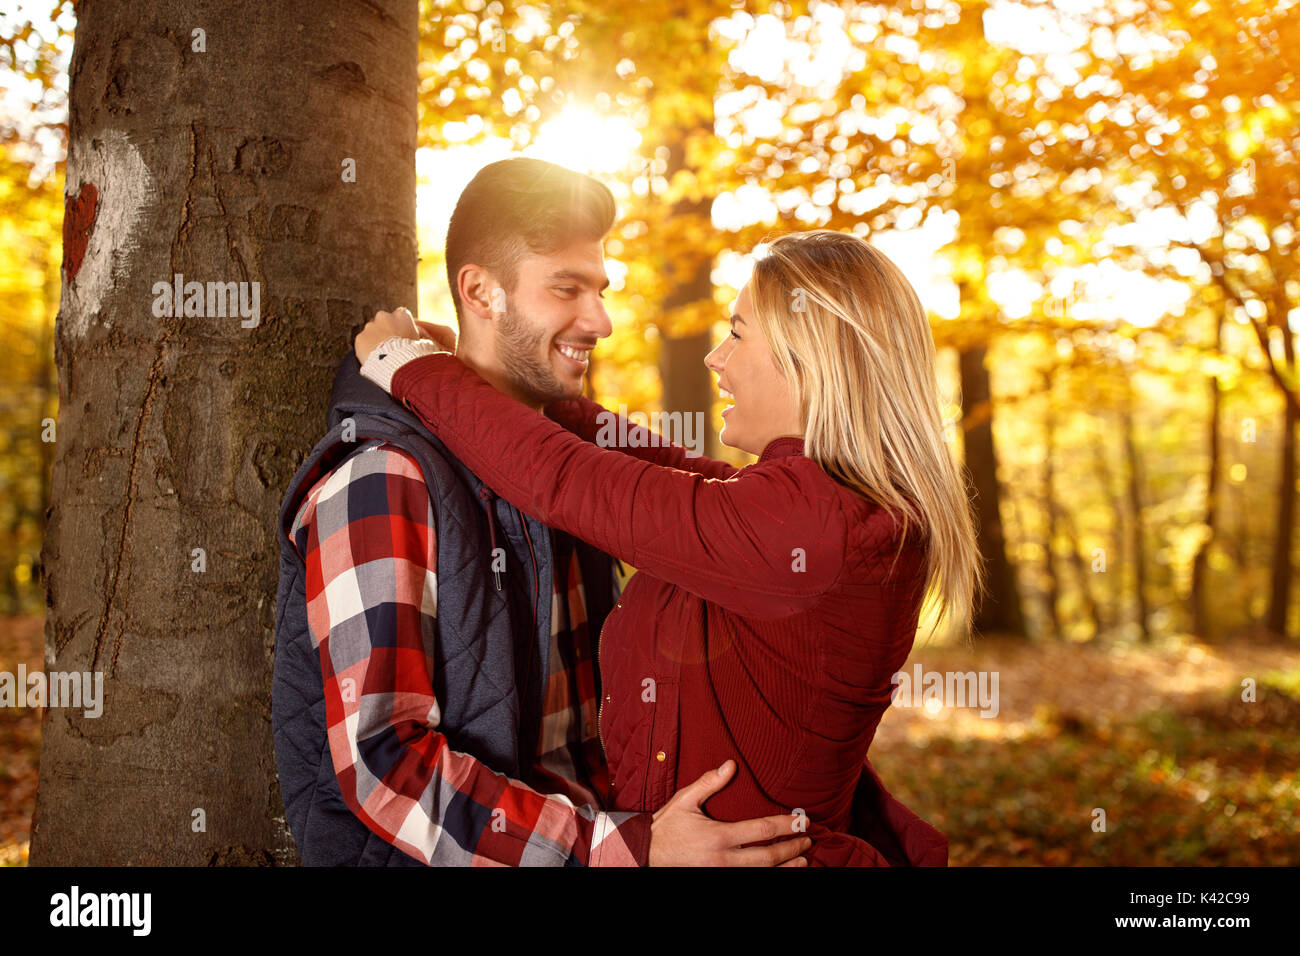 Amour, Romantique, Relation et personnes - smiling couple having fun in autumn park Banque D'Images